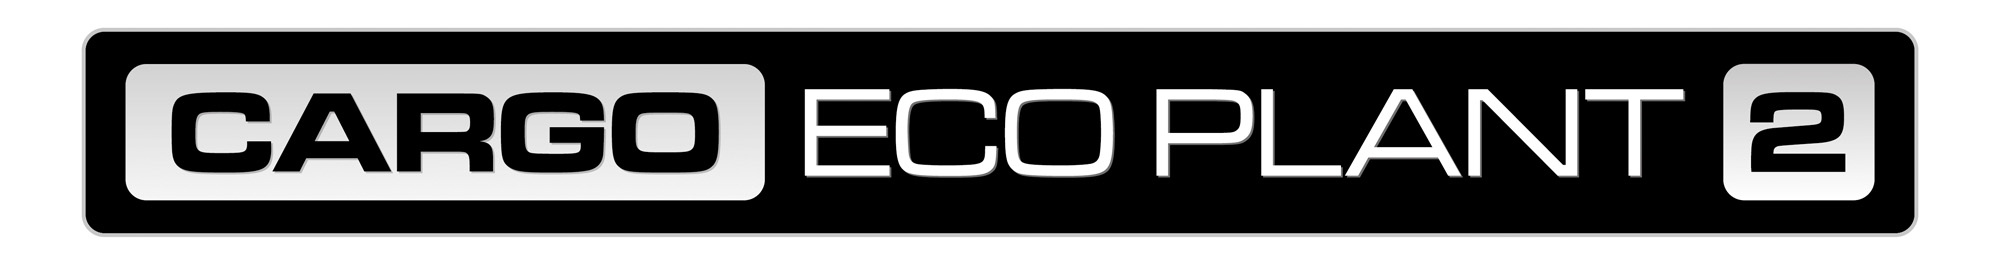 Car Go Eco Plant2 key